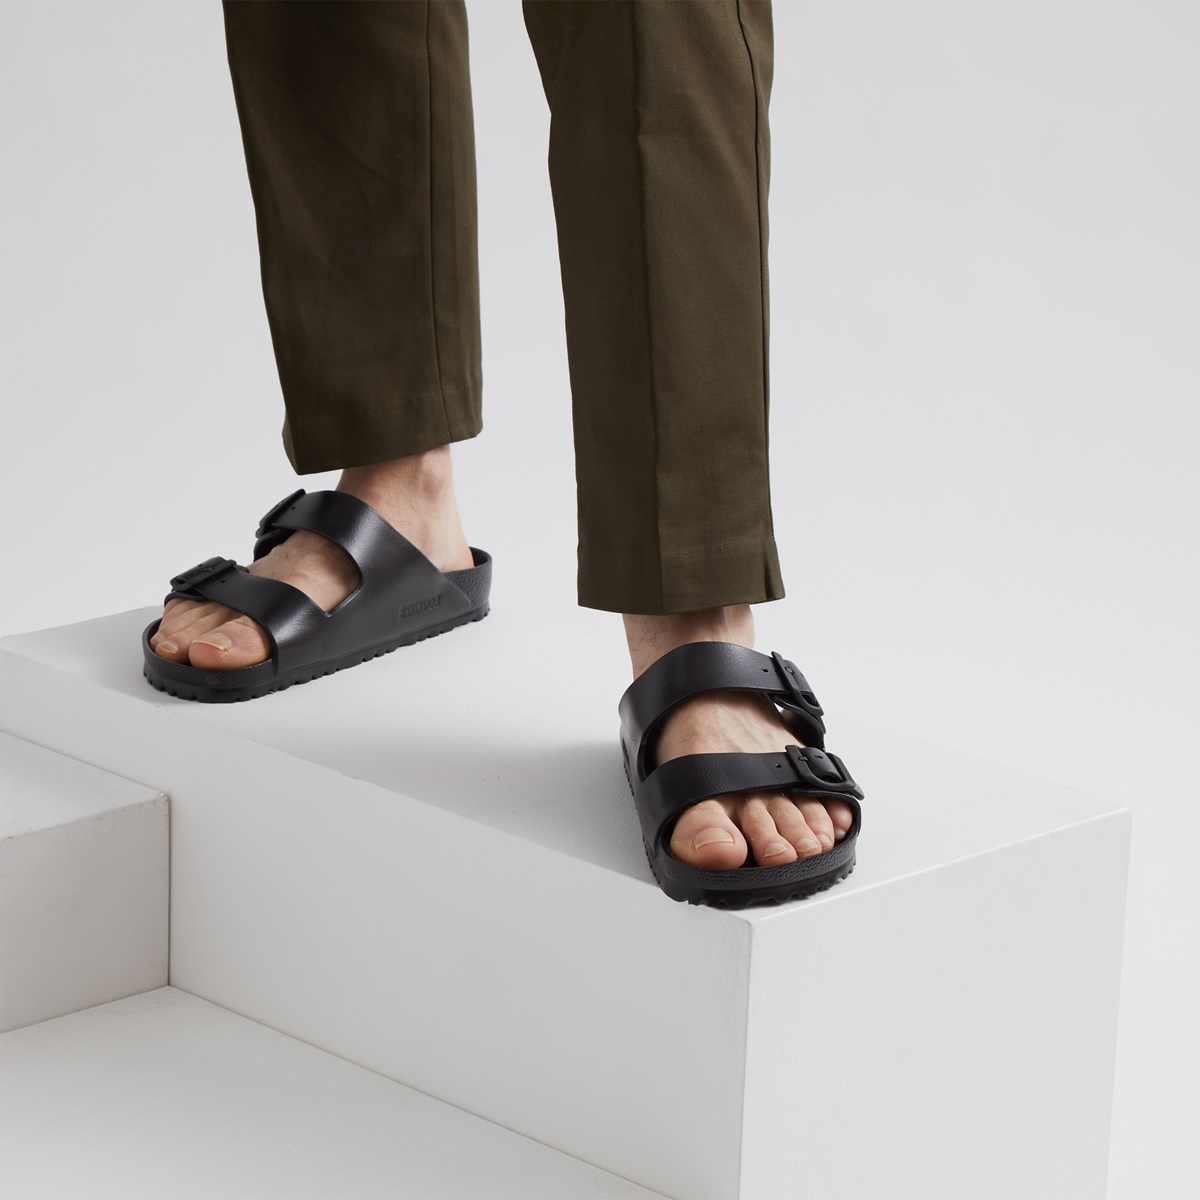 birkenstock men's eva arizona sandal